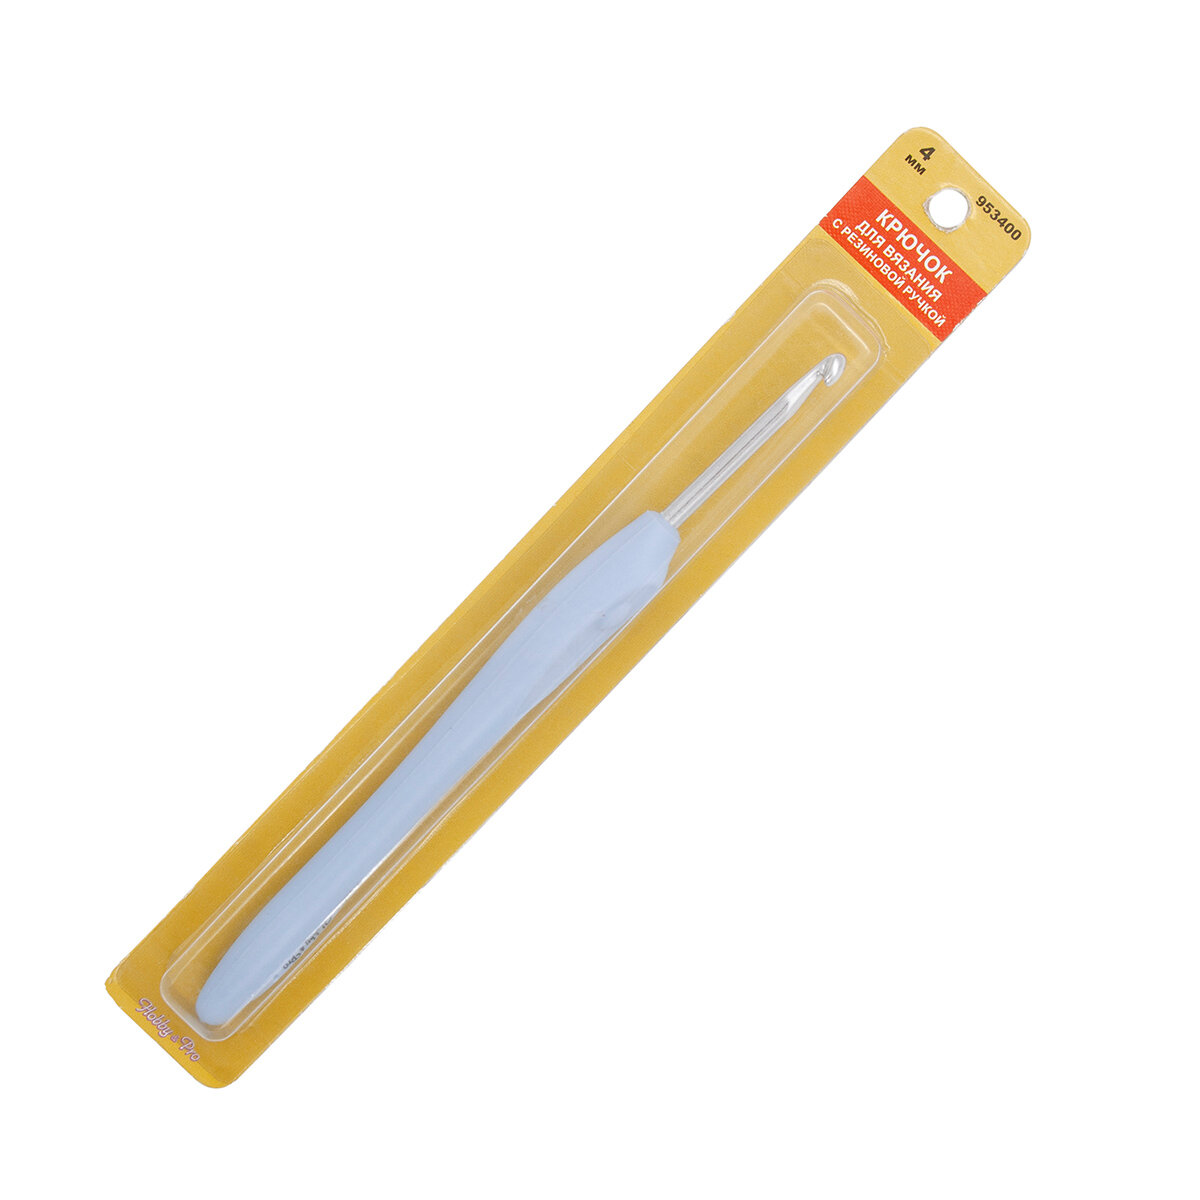 Крючок для вязания, диаметр 4 мм с резиновой ручкой с выемкой для пальца, 16 см, Hobby&Pro